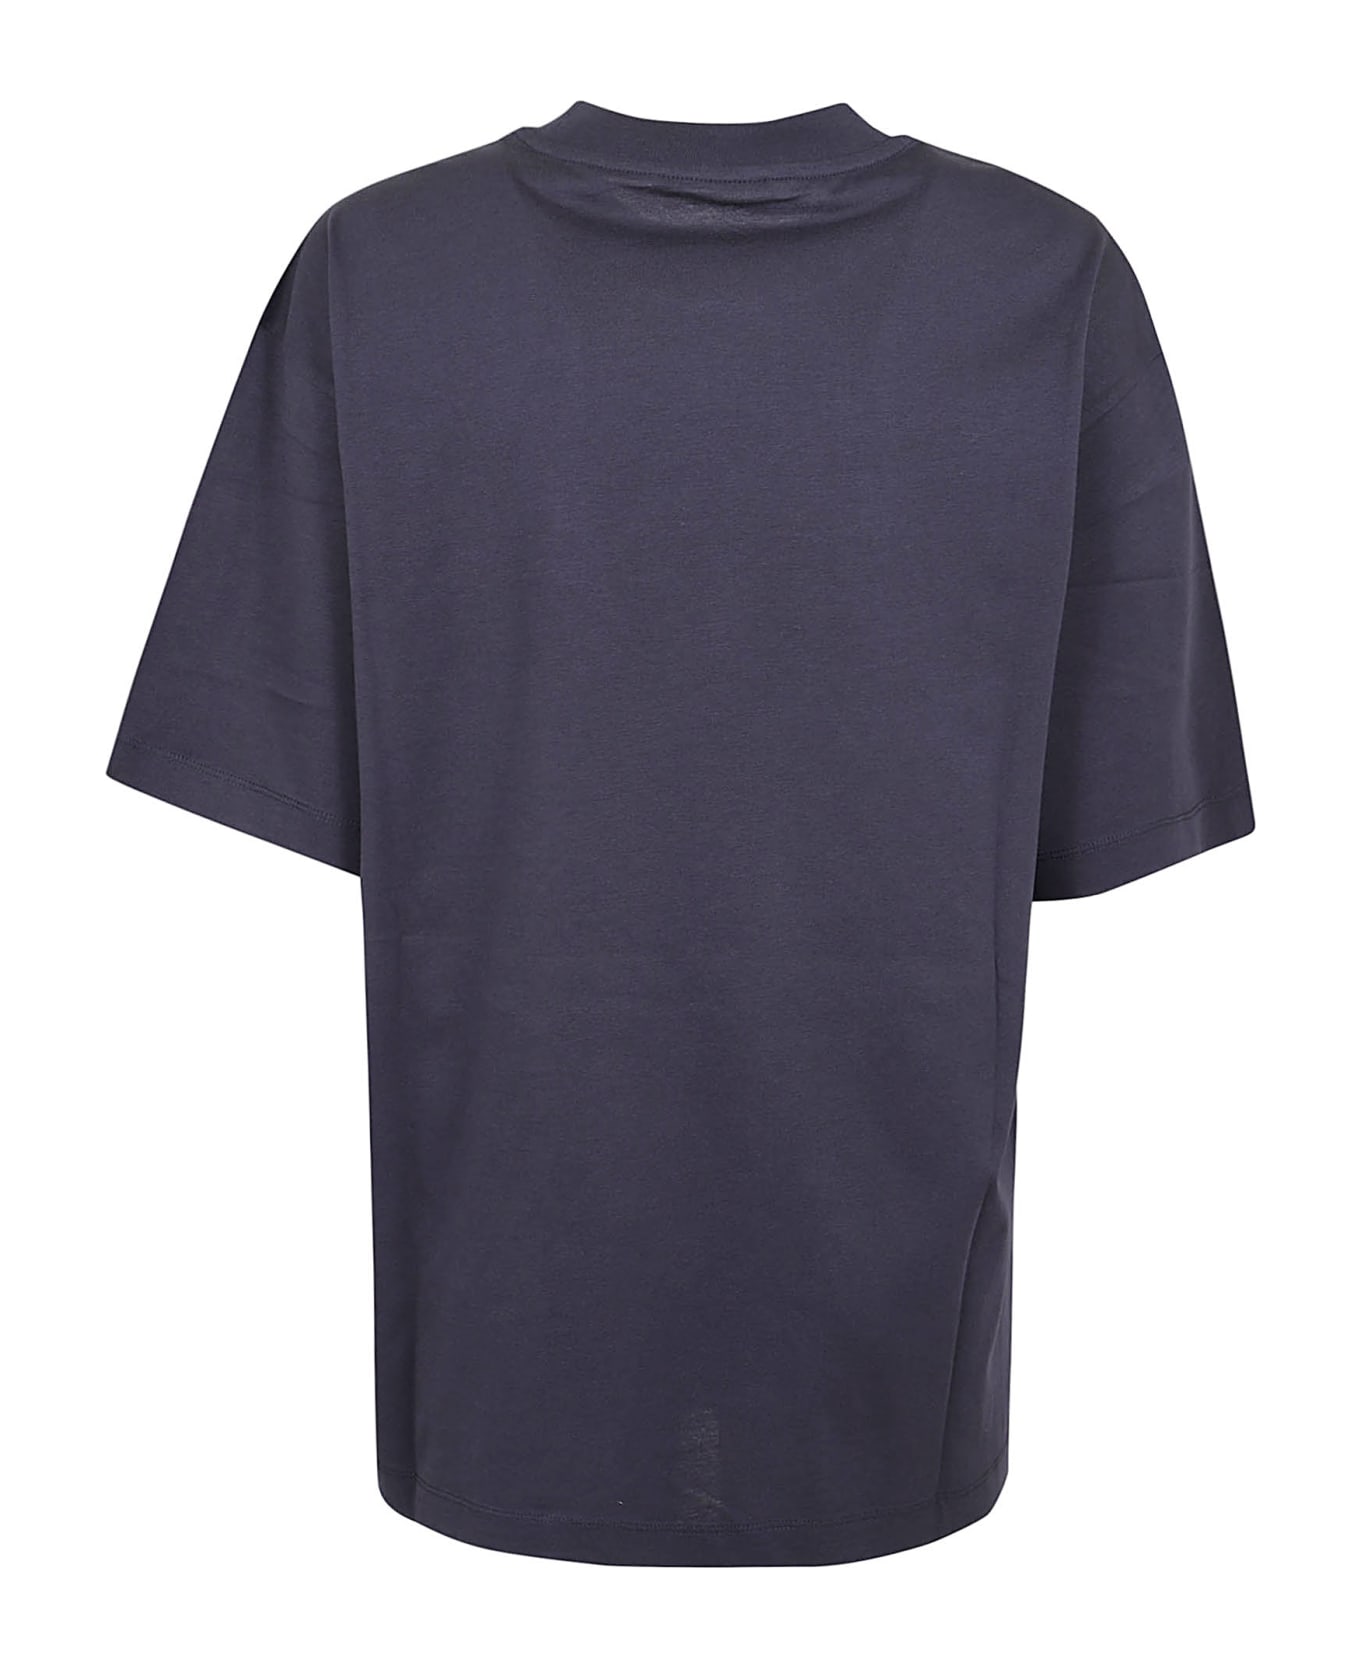 Marni T-shirt - Blublack Tシャツ